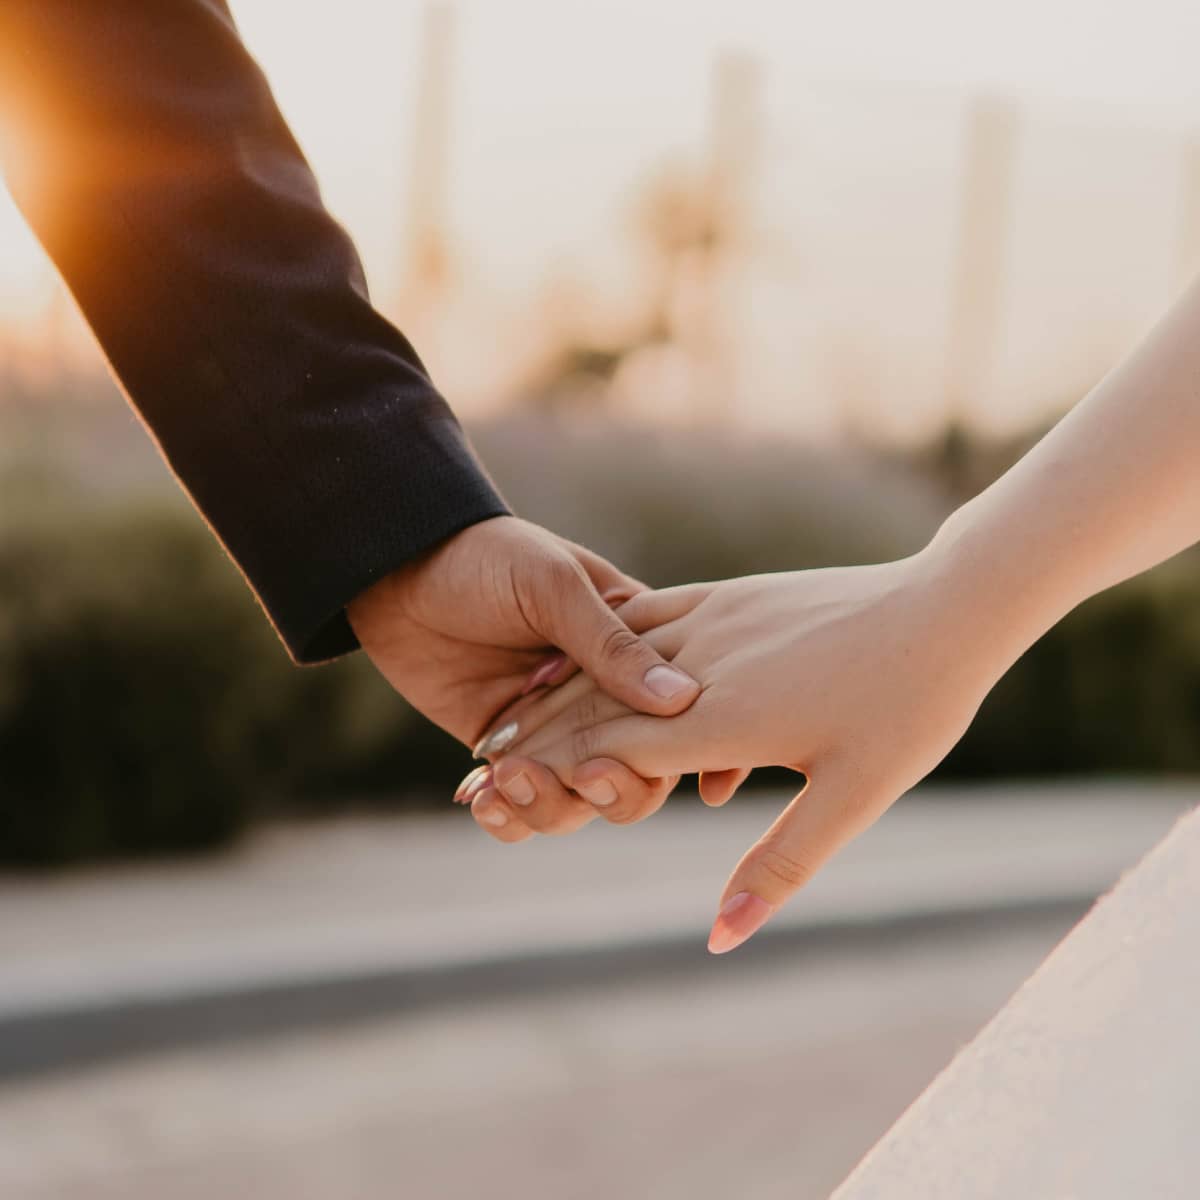 Fiche du jeu de mariage « Les points communs » - Les Jeux de Mariage